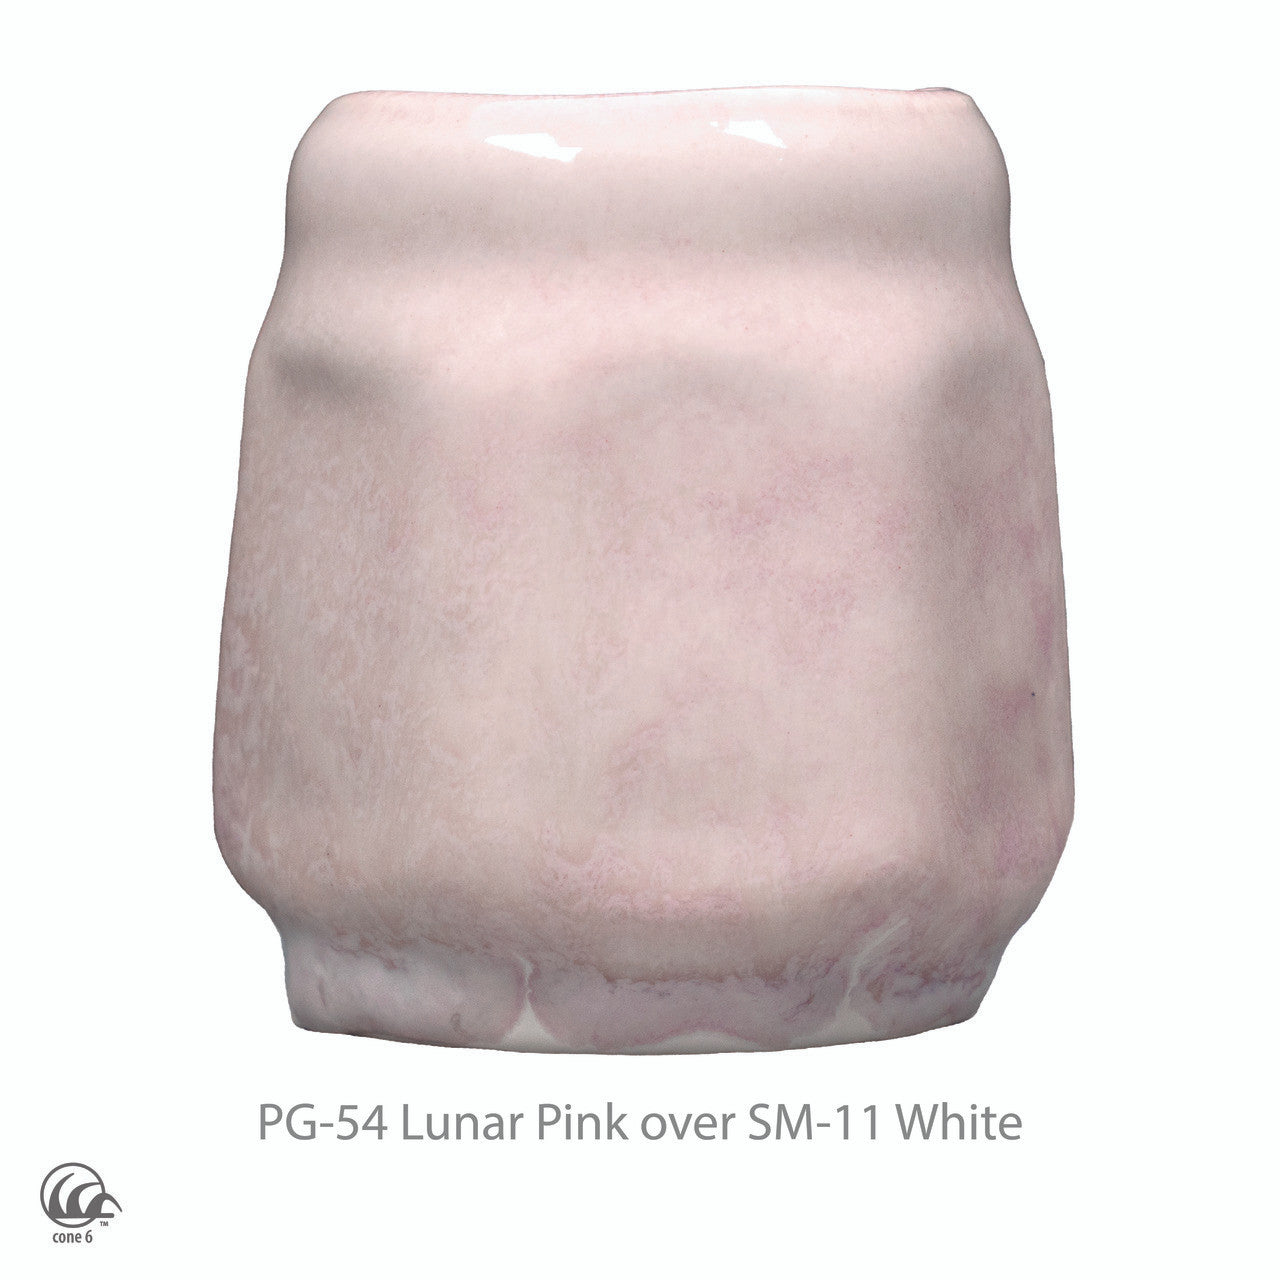 Lunar Pink PG-54